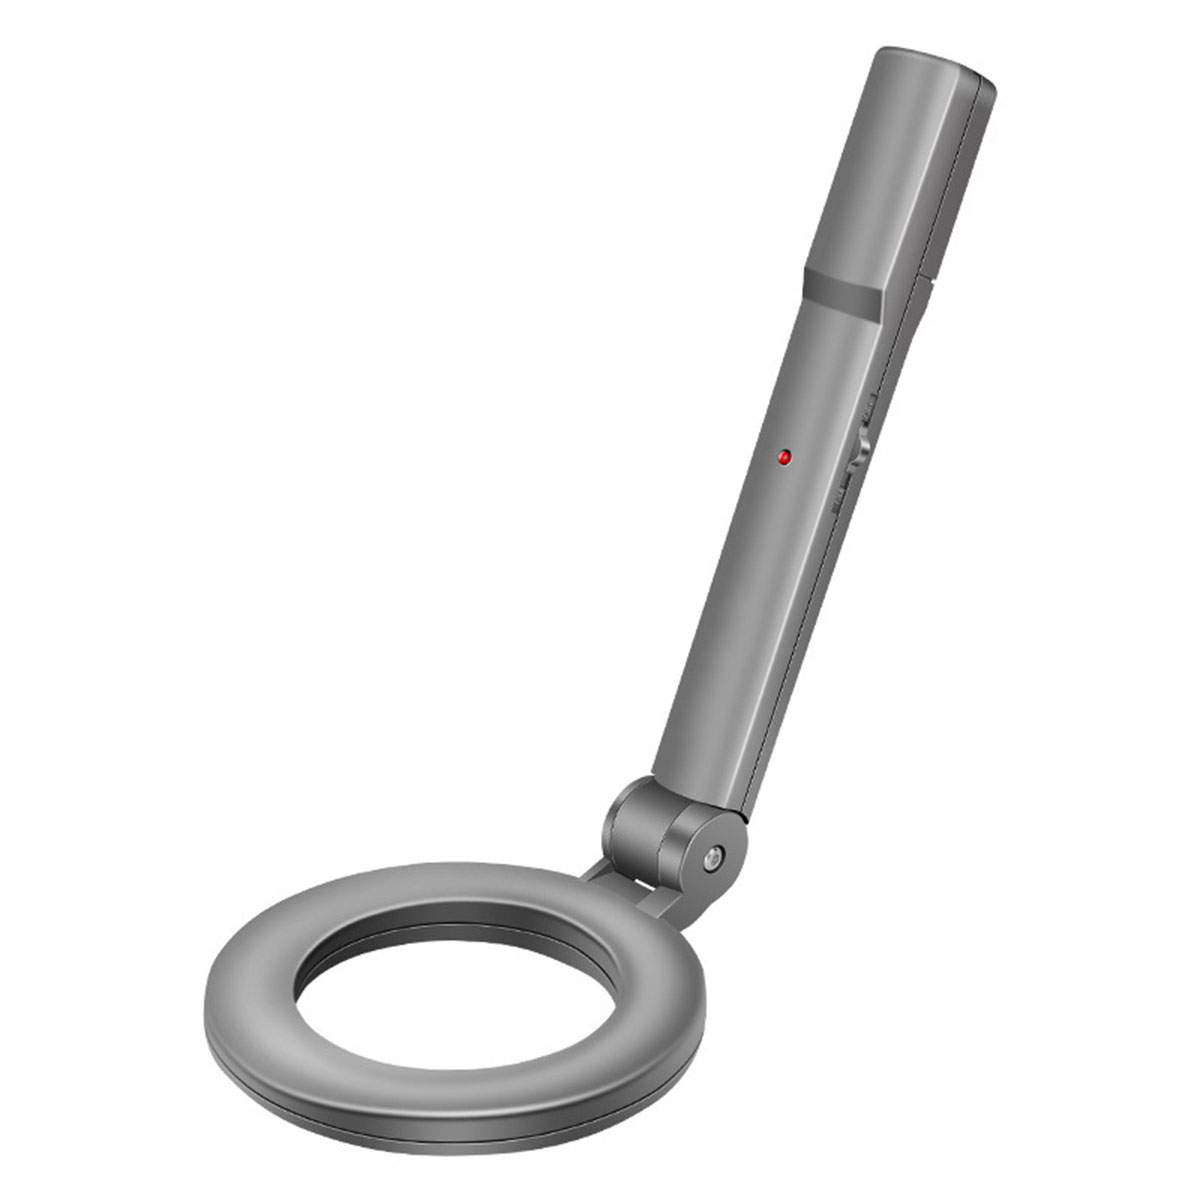 hochempfindliche Exploration Metalldetektor, BYTELIKE Checker Silber Outdoor Handheld Metalldetektor Sicherheit